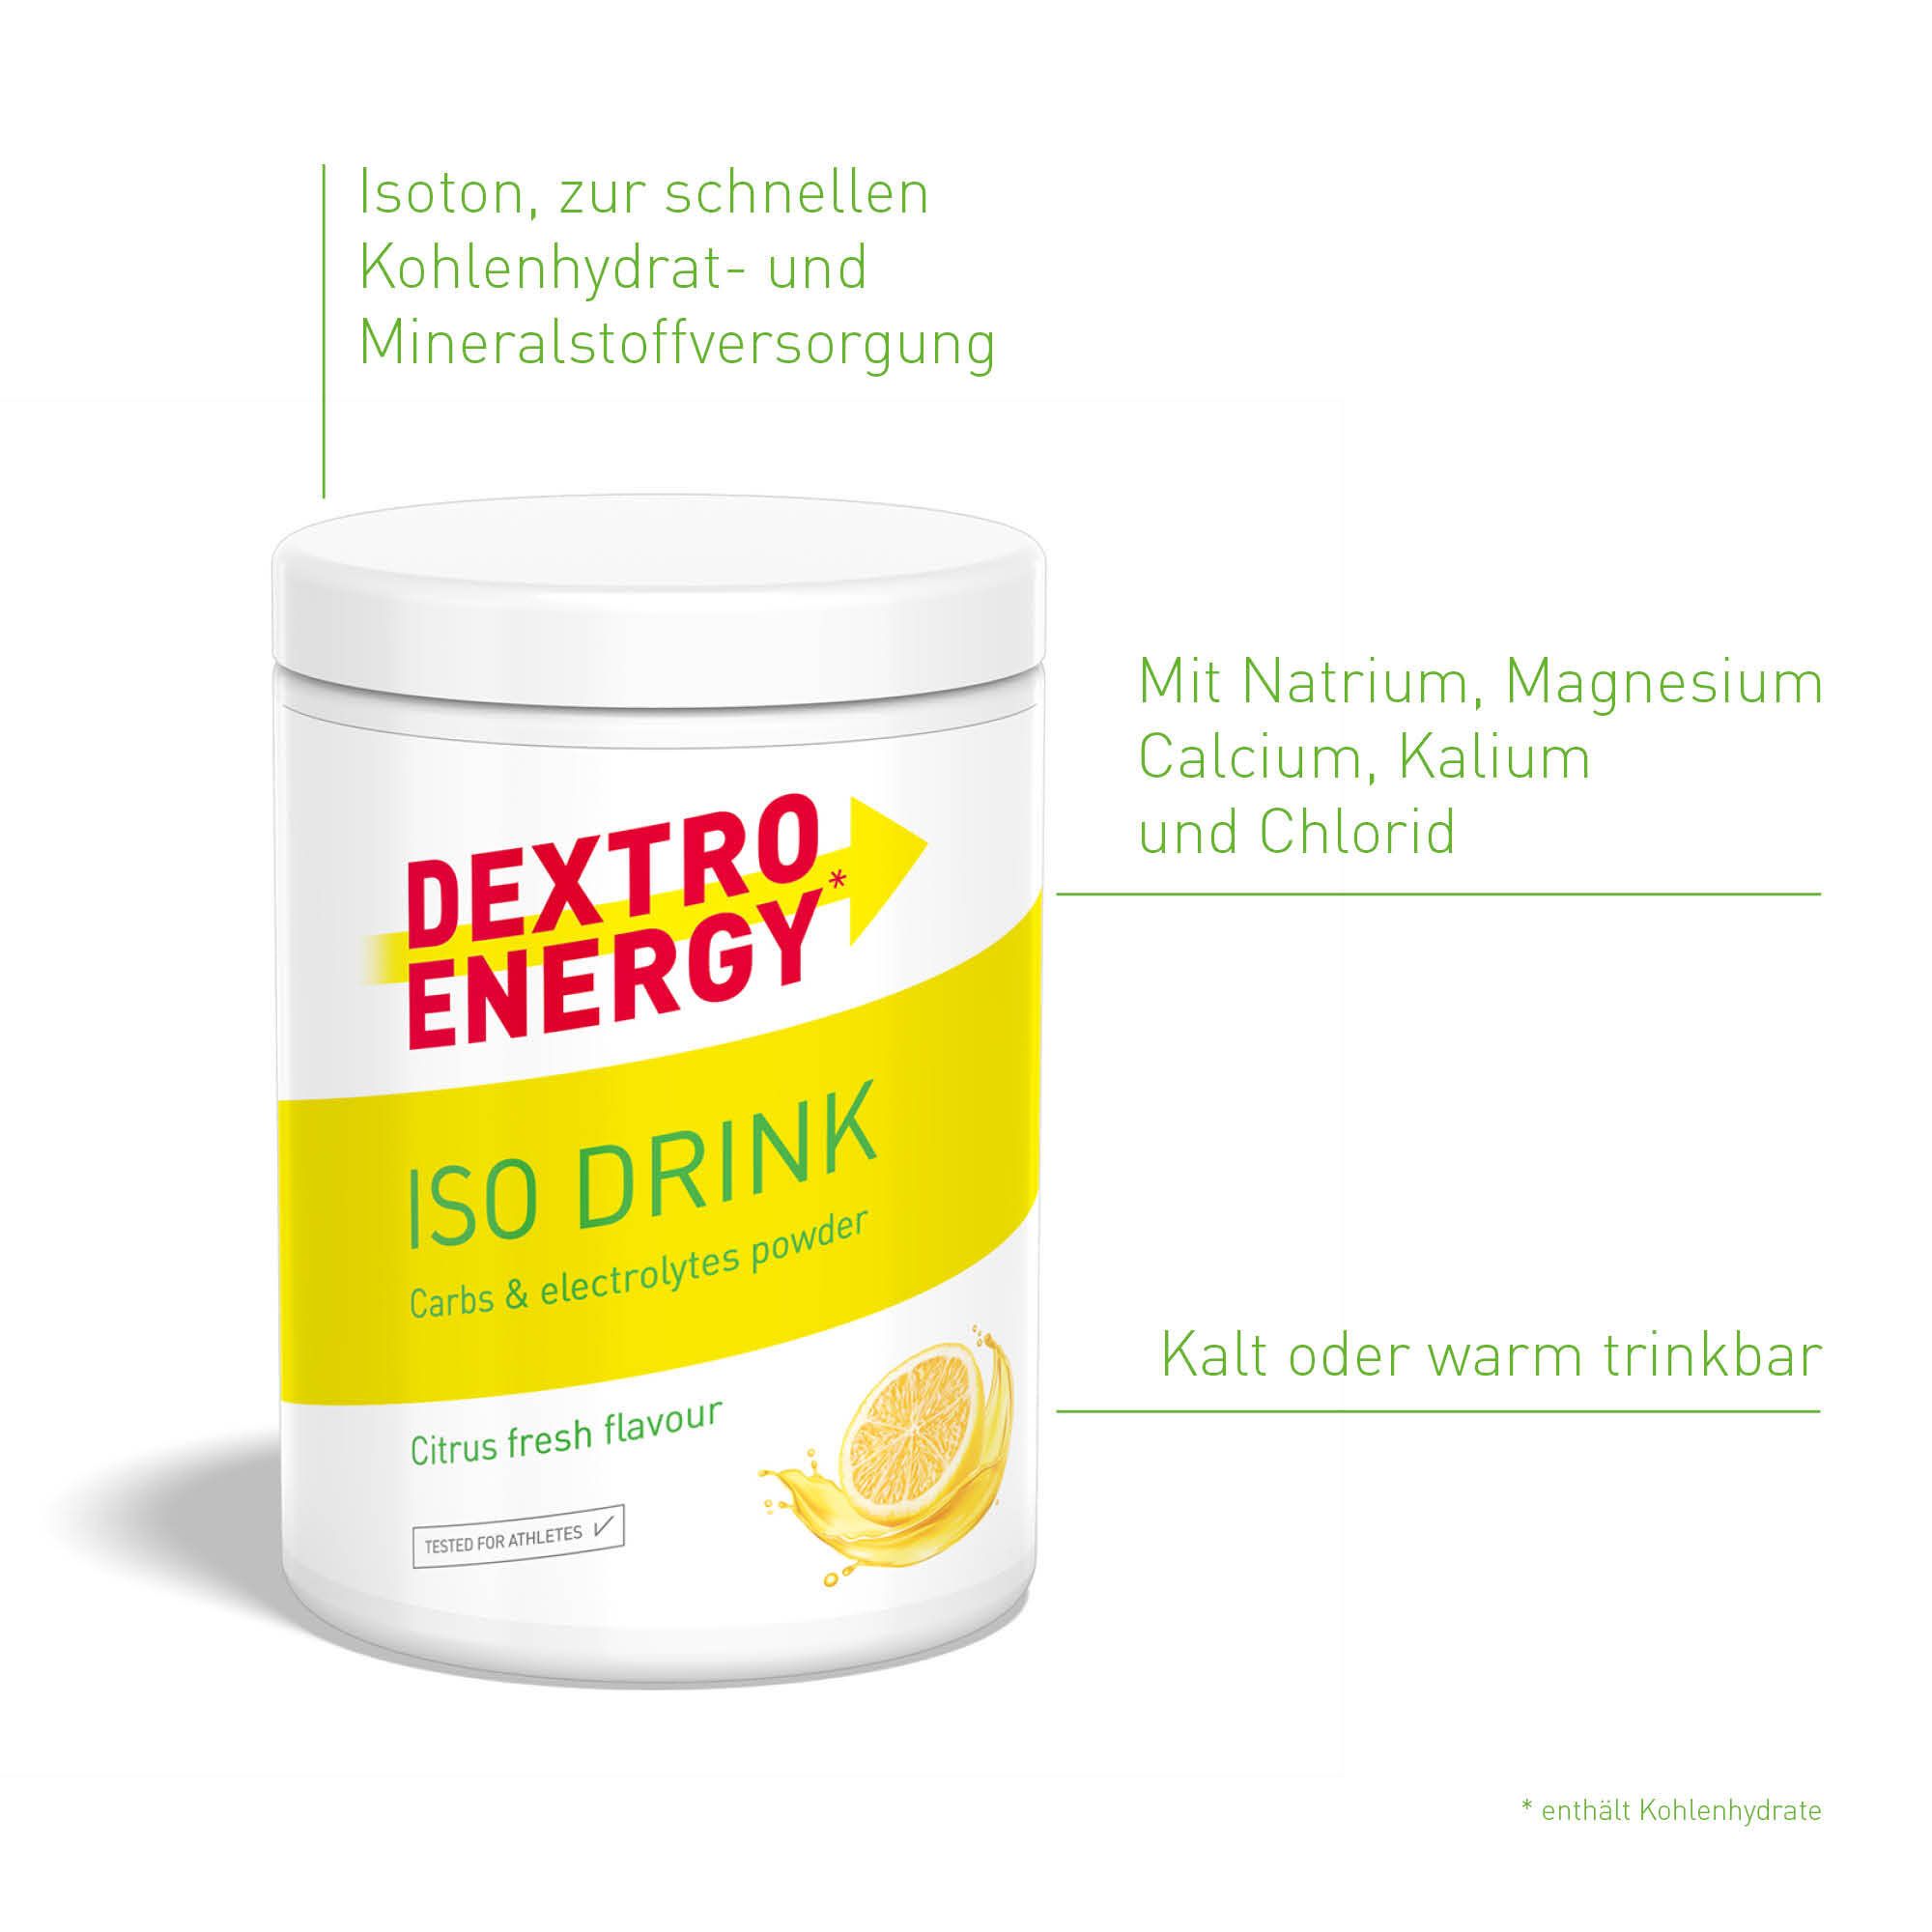 Dextro Energy Isotonic Sports Drink Citrus